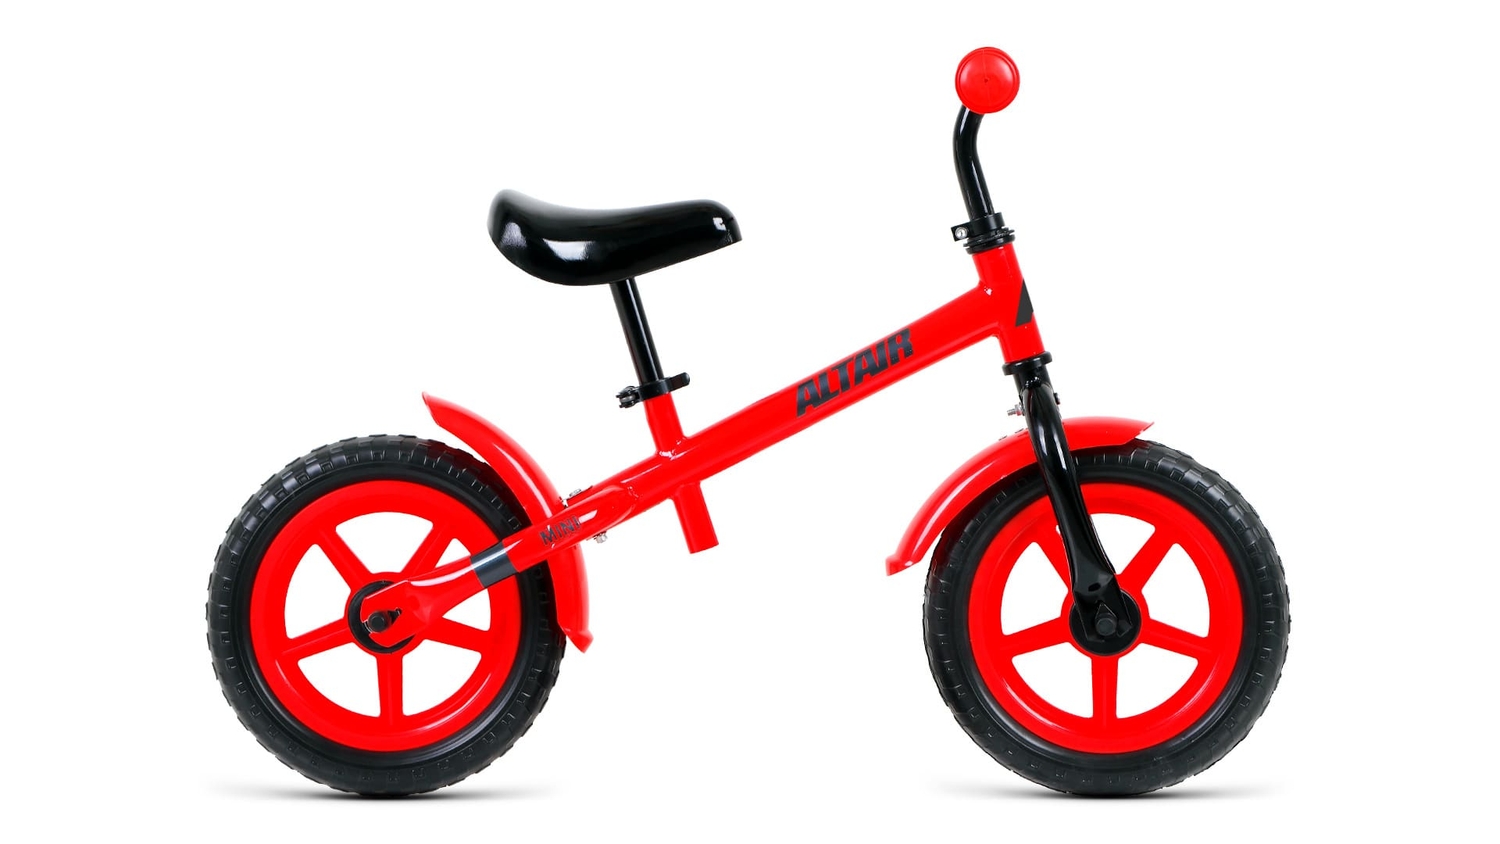 Беговел Altair Mini 12 2021 Красный/черный 1BKT1R1AX005 велосипеды двухподвесы altair mtb fs 26 1 0 год 2021 красный ростовка 18